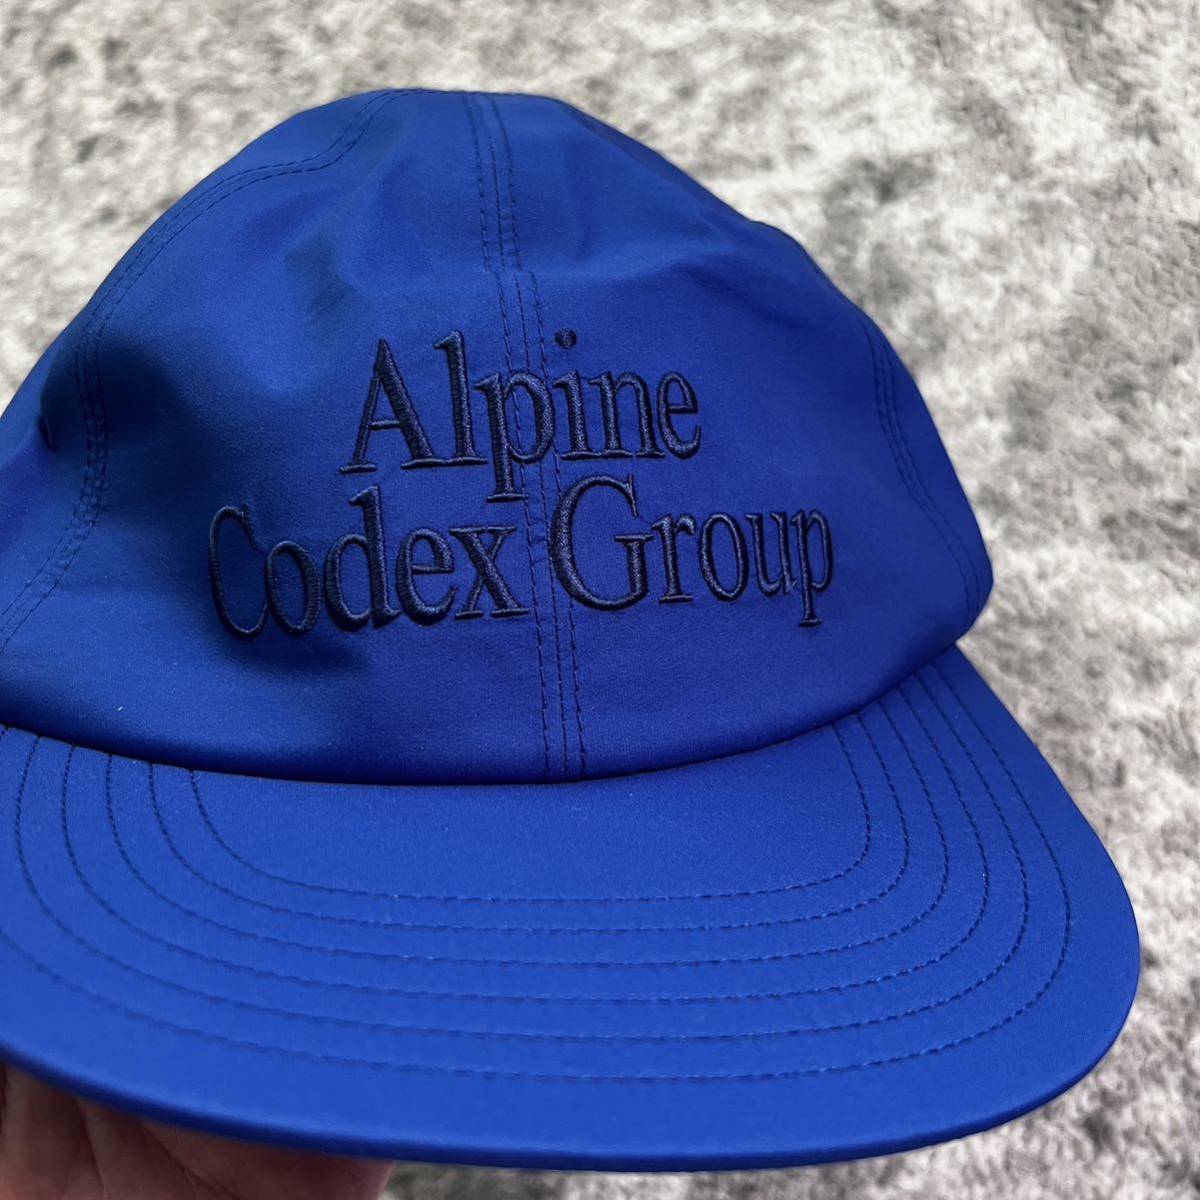 幸せなふたりに贈る結婚祝い Alpine goldwin actualsource Cap 3L GORE-TEX Group Codex